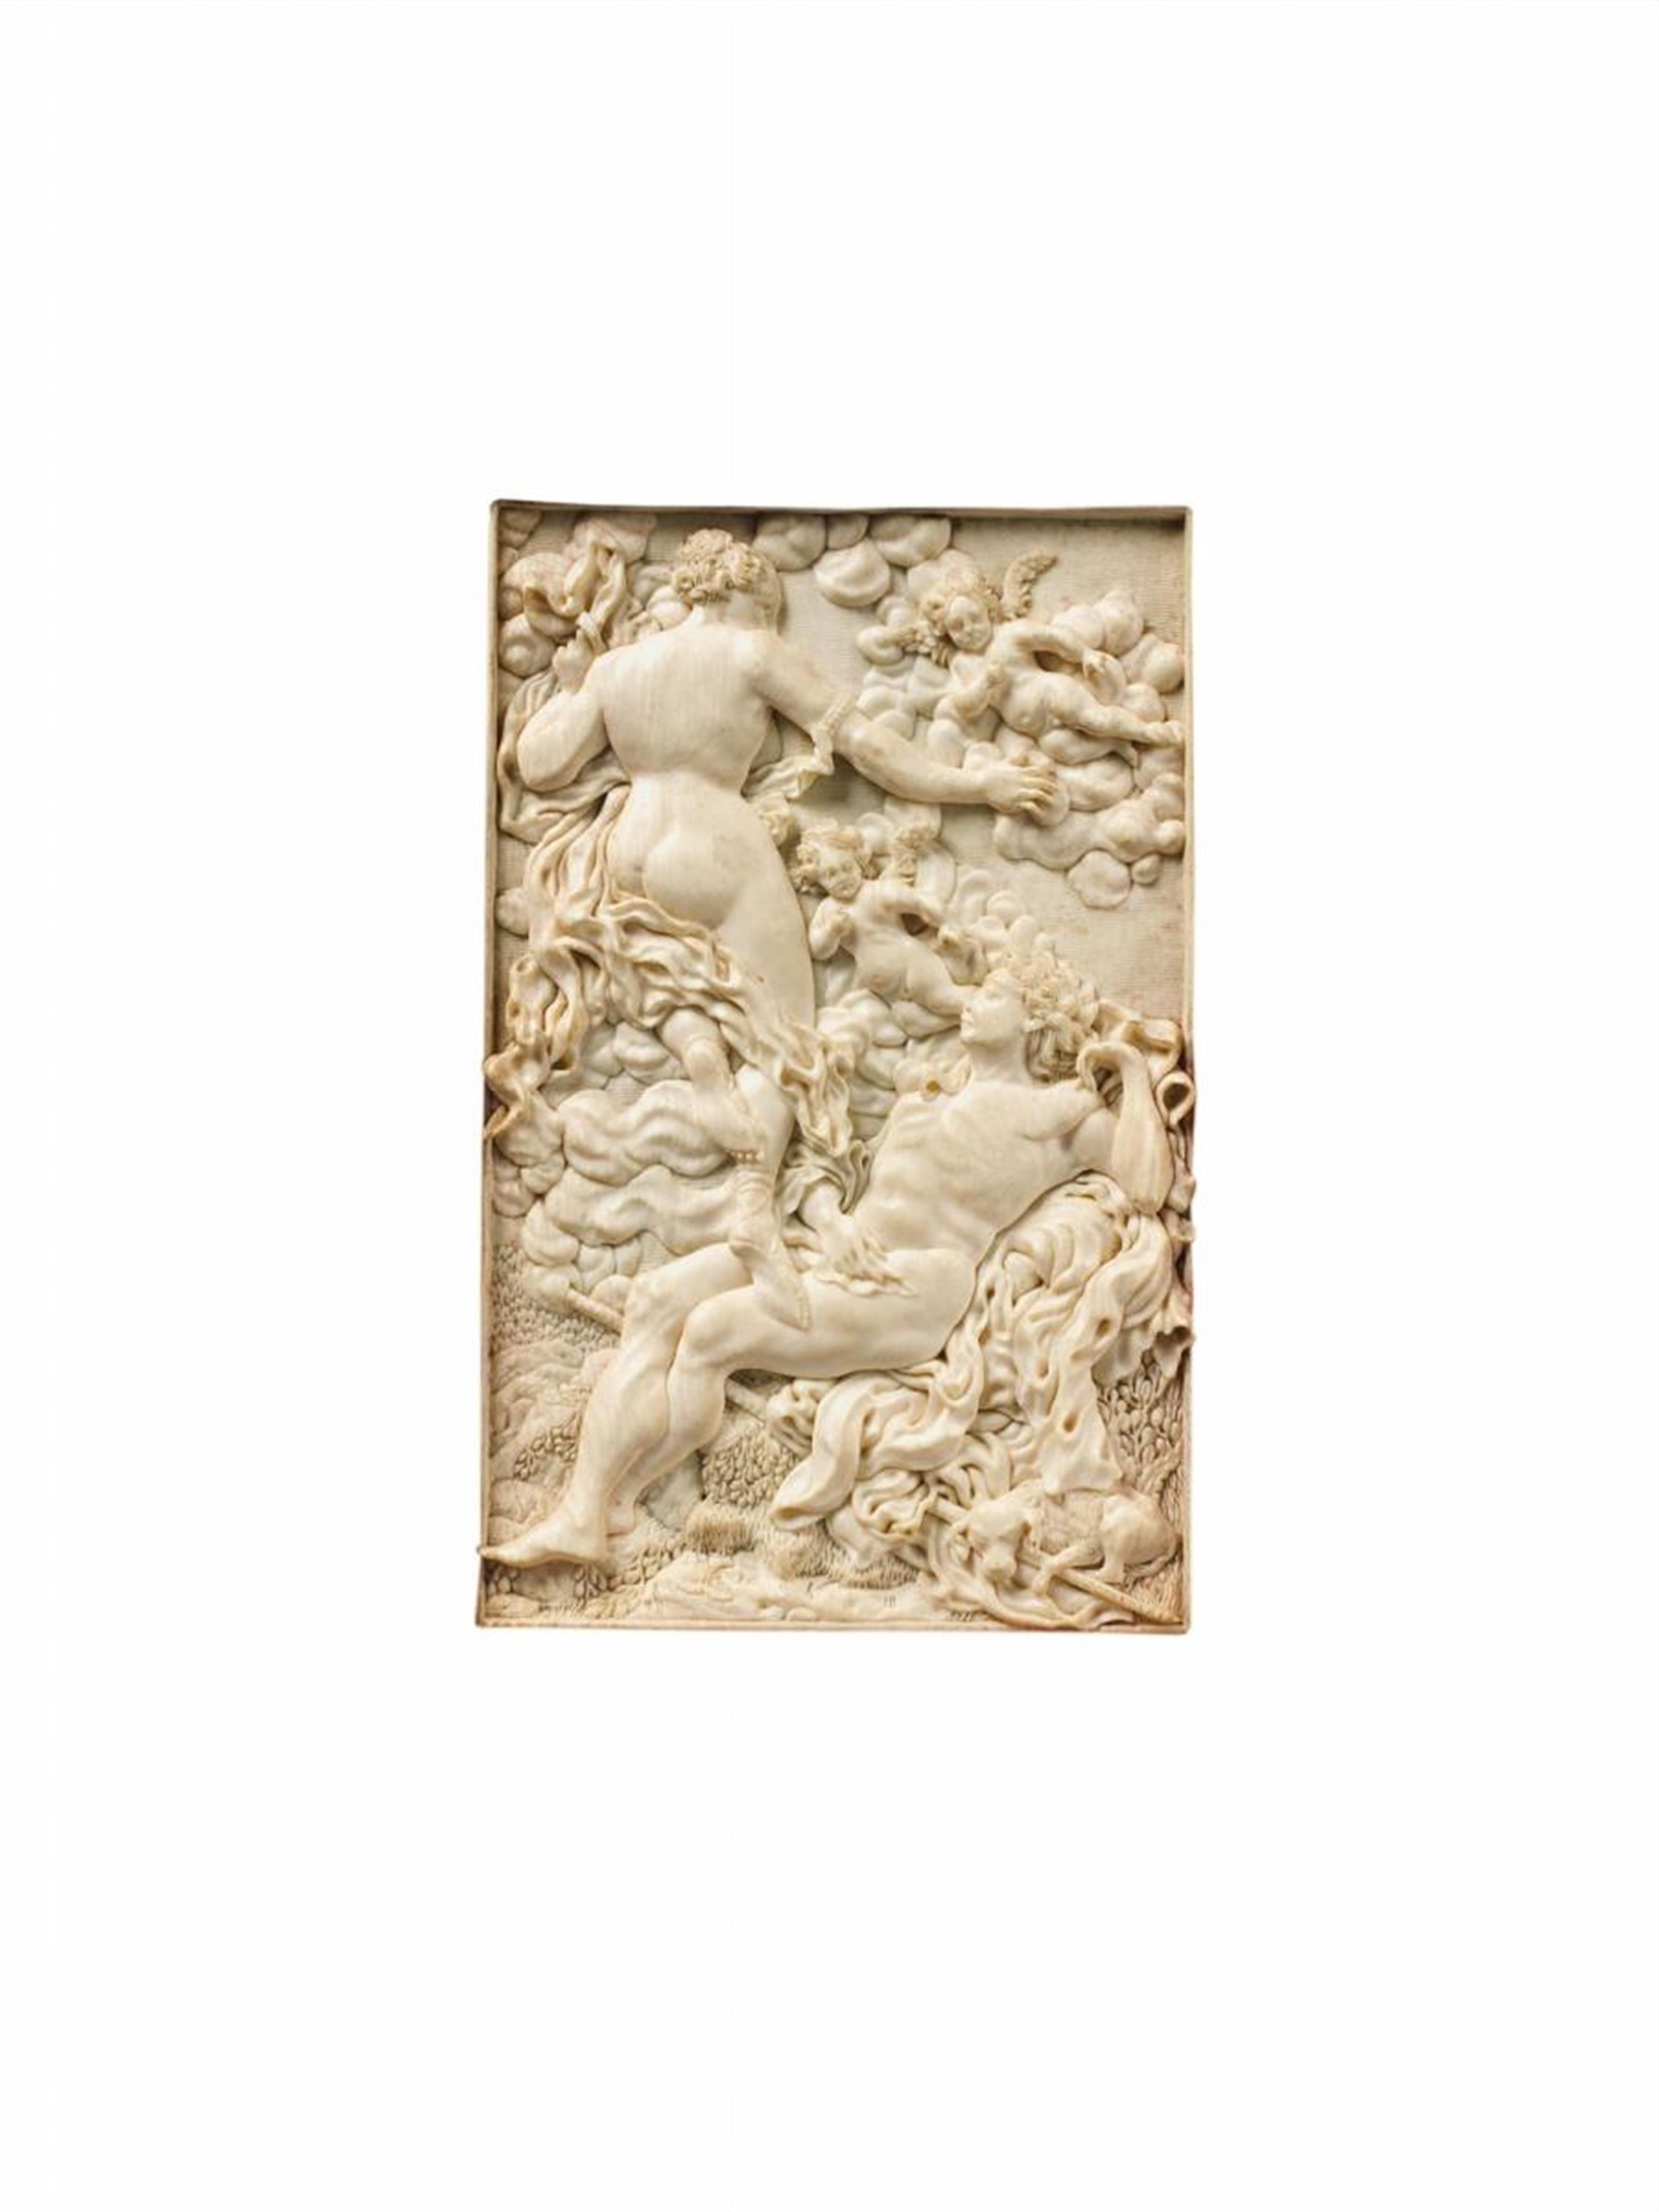 Süddeutsch um 1700 - Venus und Adonis - image-1